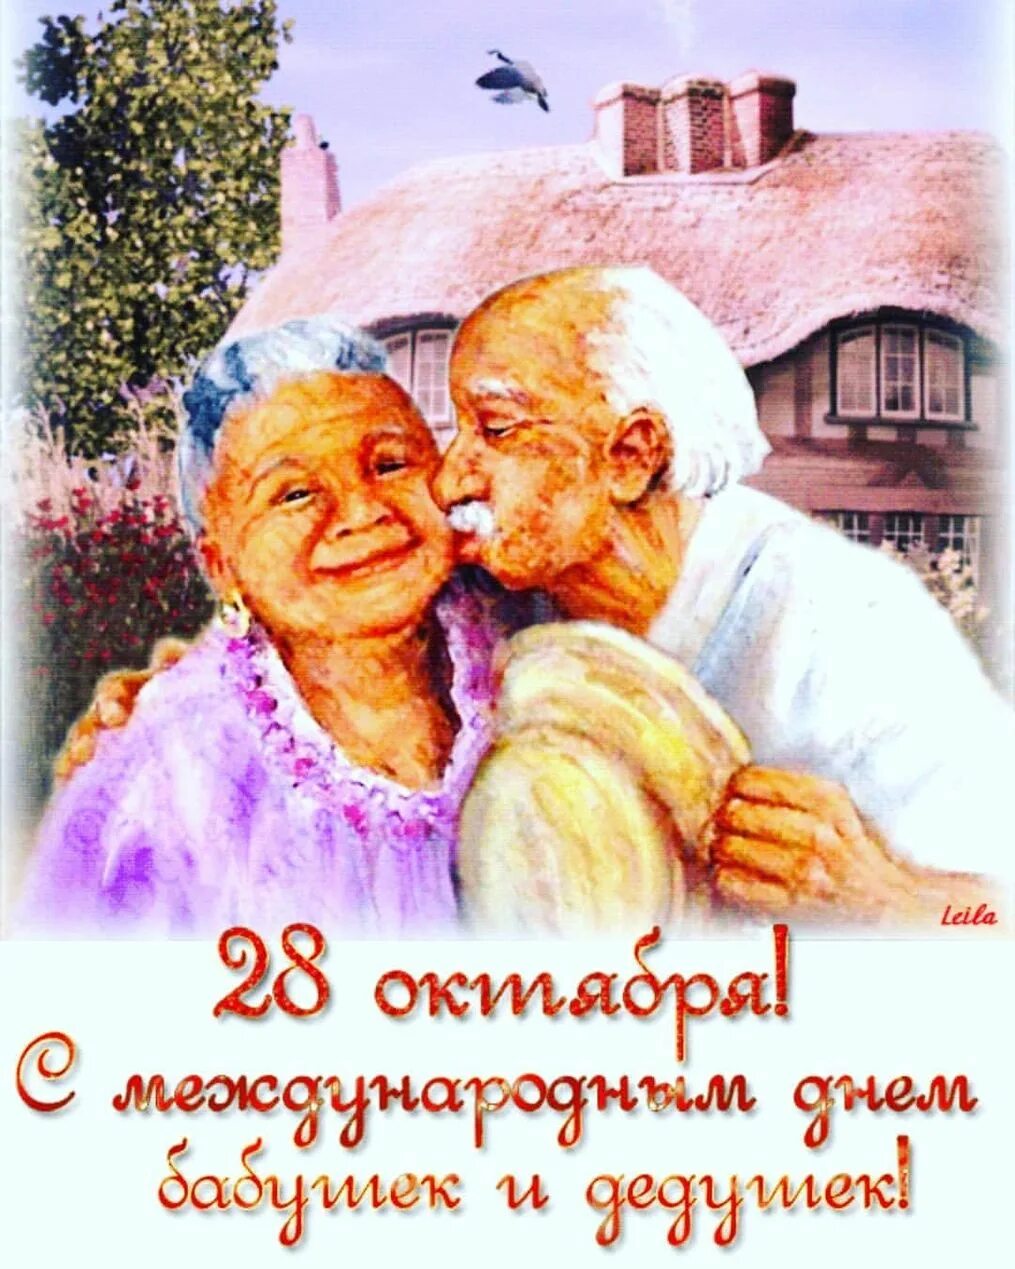 Поздравление с международным днем бабушек. С днём бабушек и дедушек. День бабайки и дедушки. Лень бабушки и дедушки. С днем бабушек идедущек.